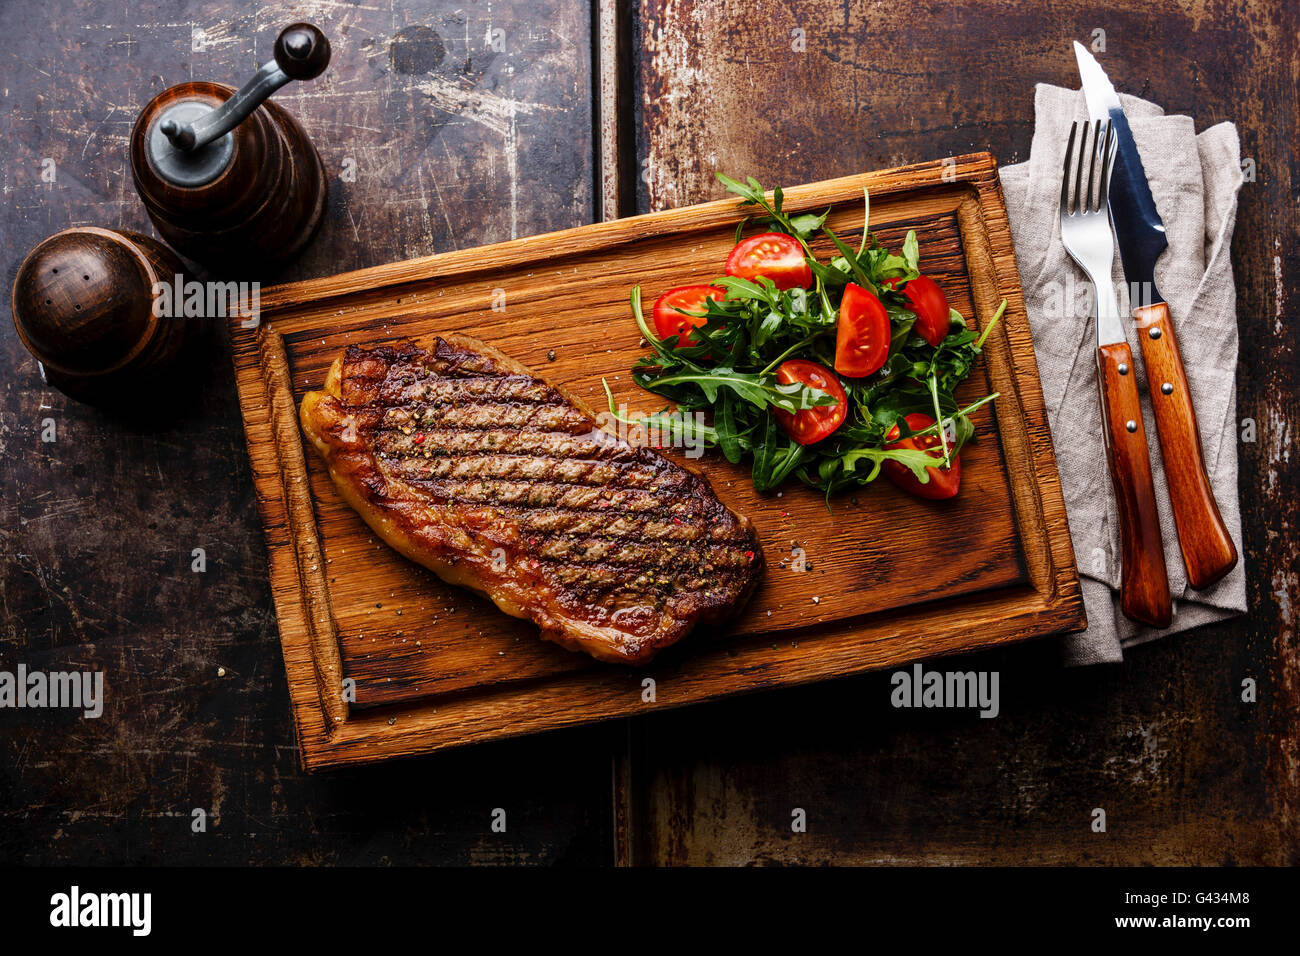 Alla brace bistecca di controfiletto con insalata e una forchetta e coltello sul tagliere su sfondo scuro Foto Stock